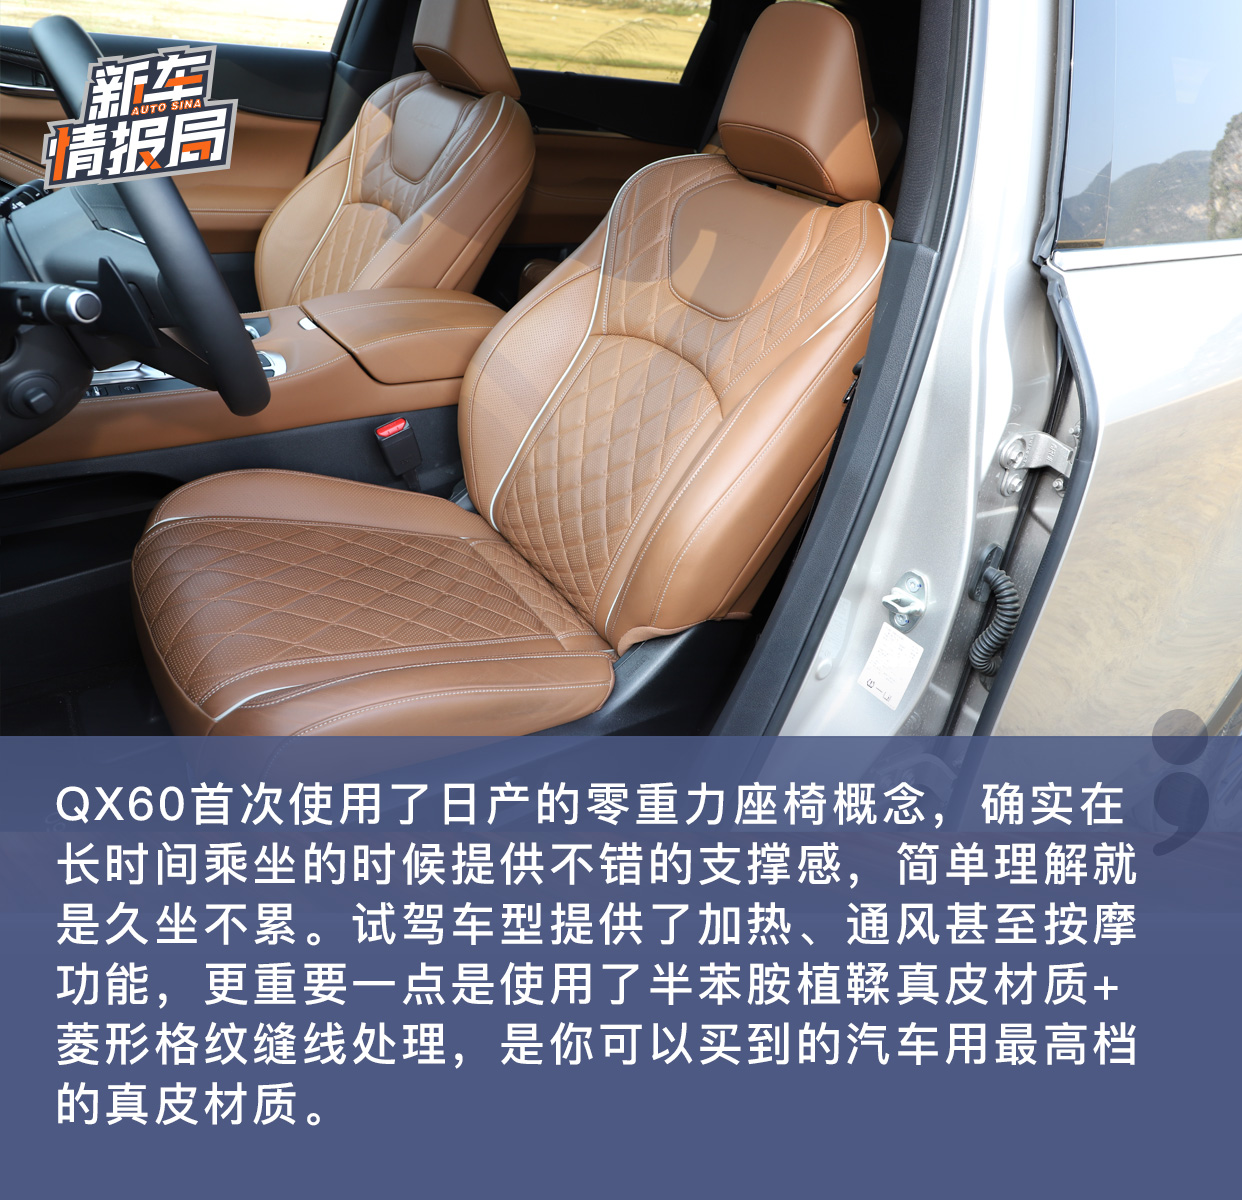 舒适为先 全新一代英菲尼迪QX60试驾体验